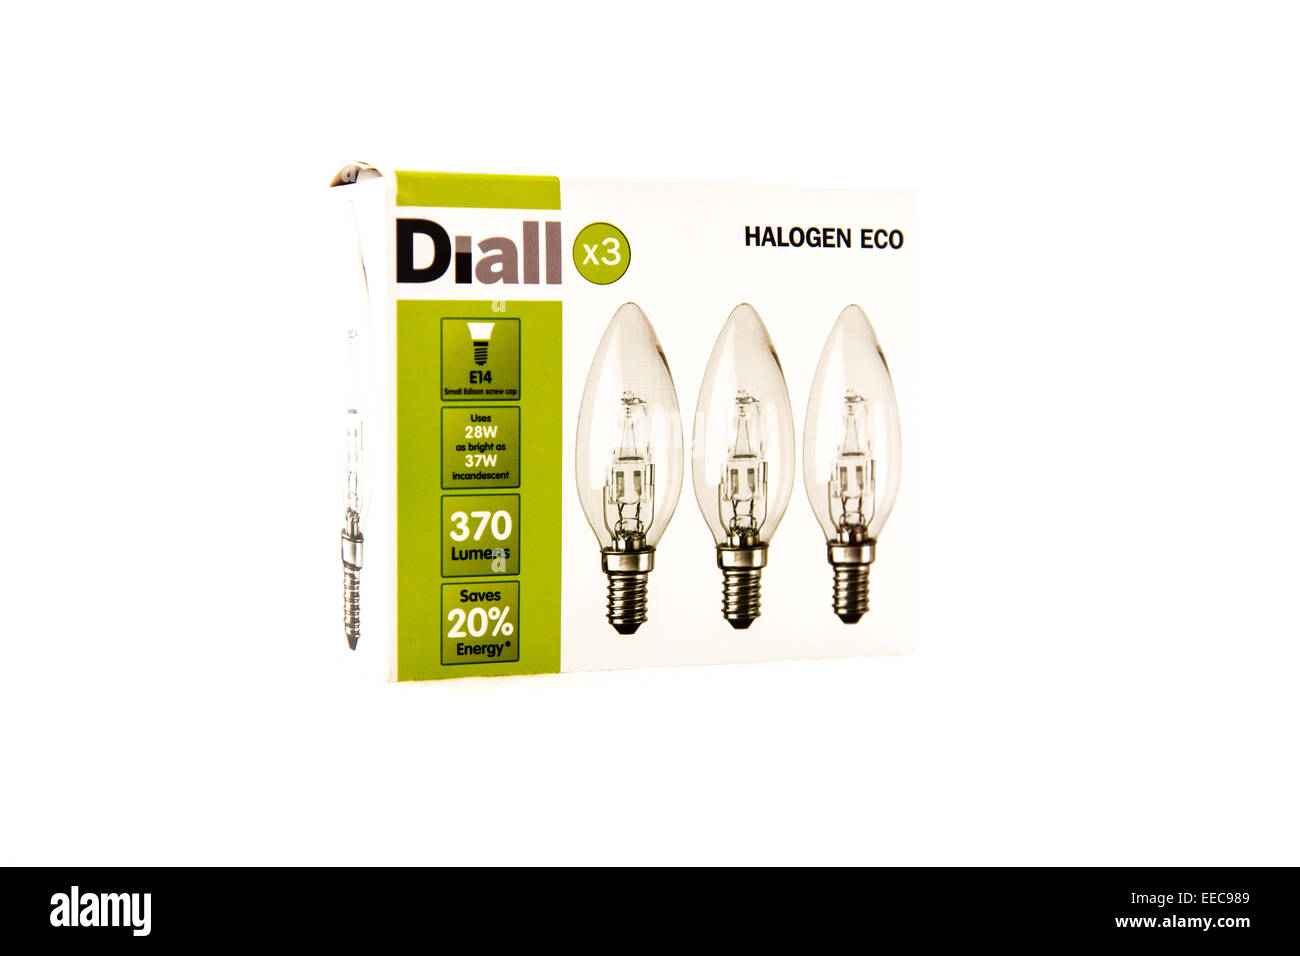 Halogen Eco Glühbirne Glühbirnen Energiesparer sparen Pack Paket Diall Box Glühbirne Kopie Raum weißen Hintergrund ausschneiden Stockfoto